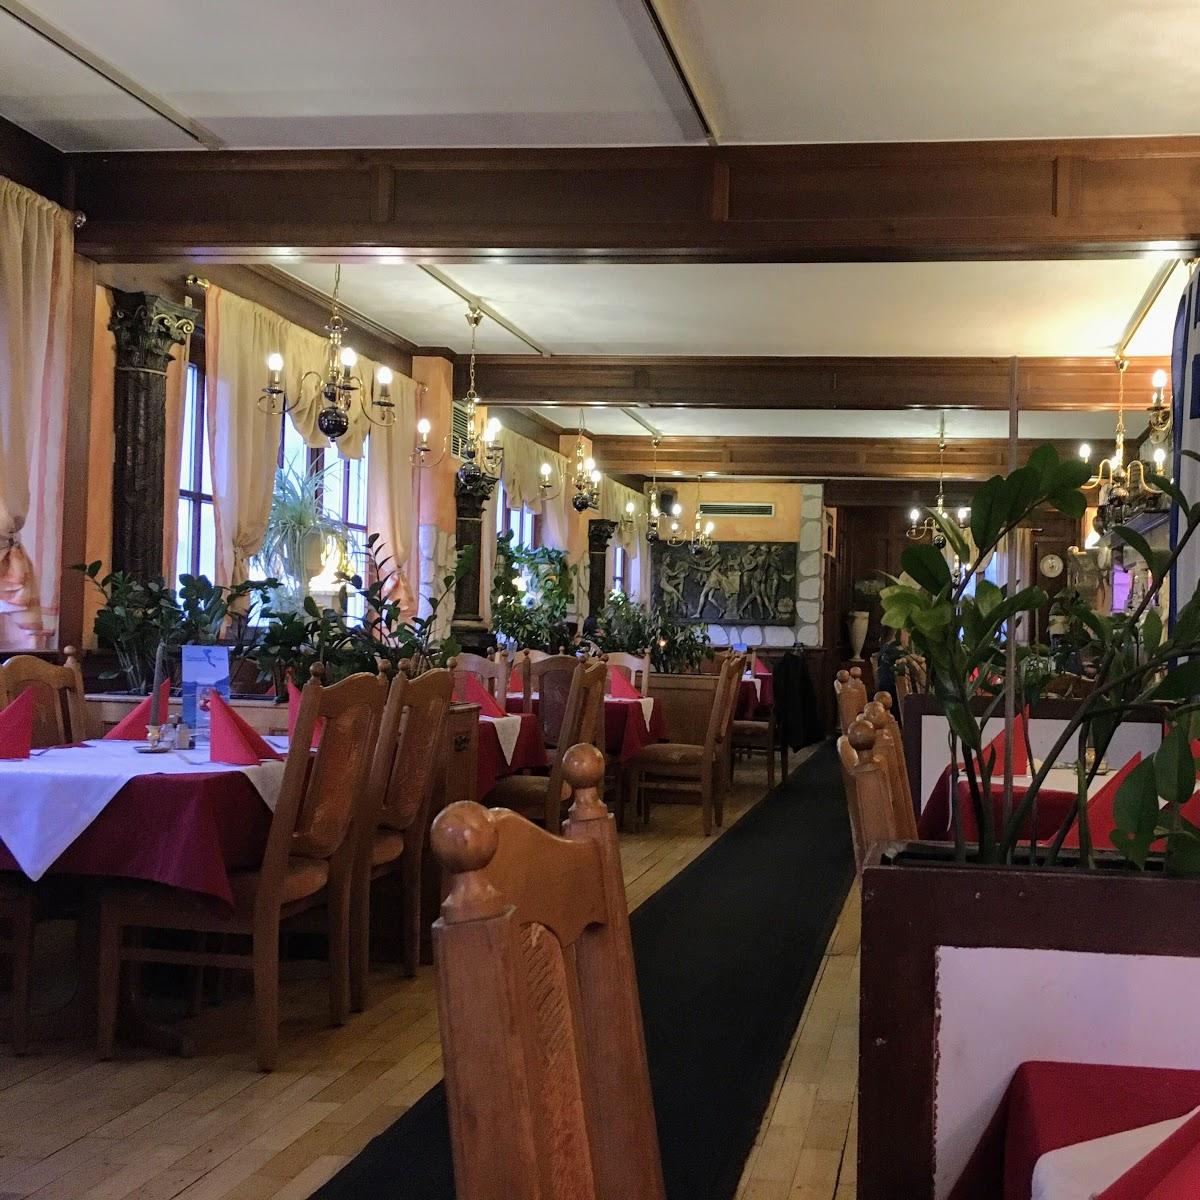 Restaurant "Restaurant Athen Breisach" in Breisach am Rhein